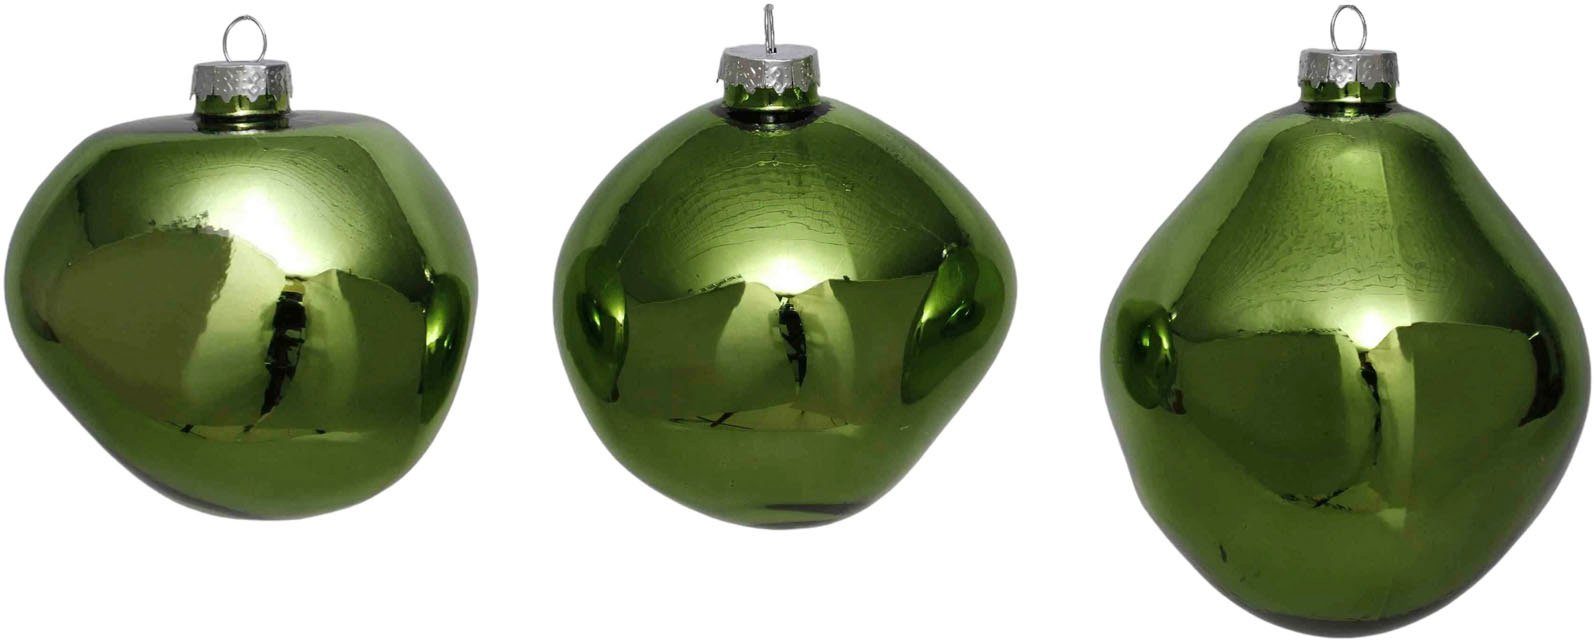 Leonique Weihnachtsbaumkugel Birdelle glänzend, Weihnachtsdeko, Christbaumschmuck, Christbaumkugeln (3 St), Baumkugeln in organischer Form, Ø 10 cm, organische Kugeln aus Glas grün